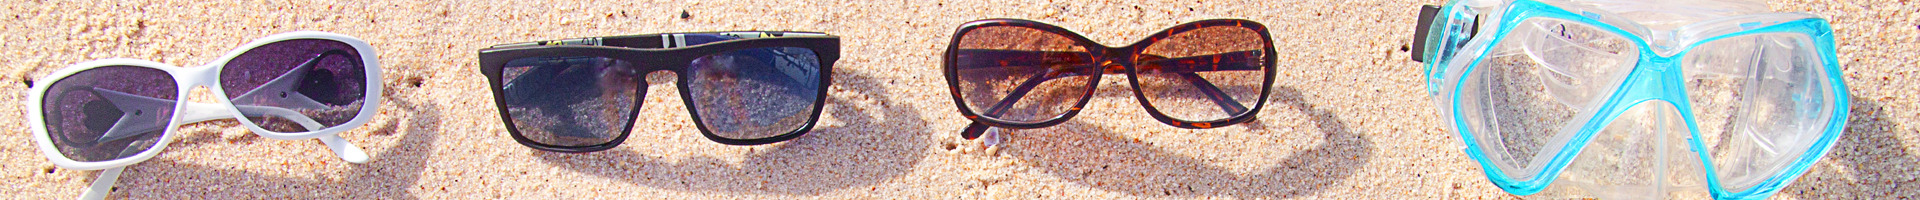 Sunglasses on Sand